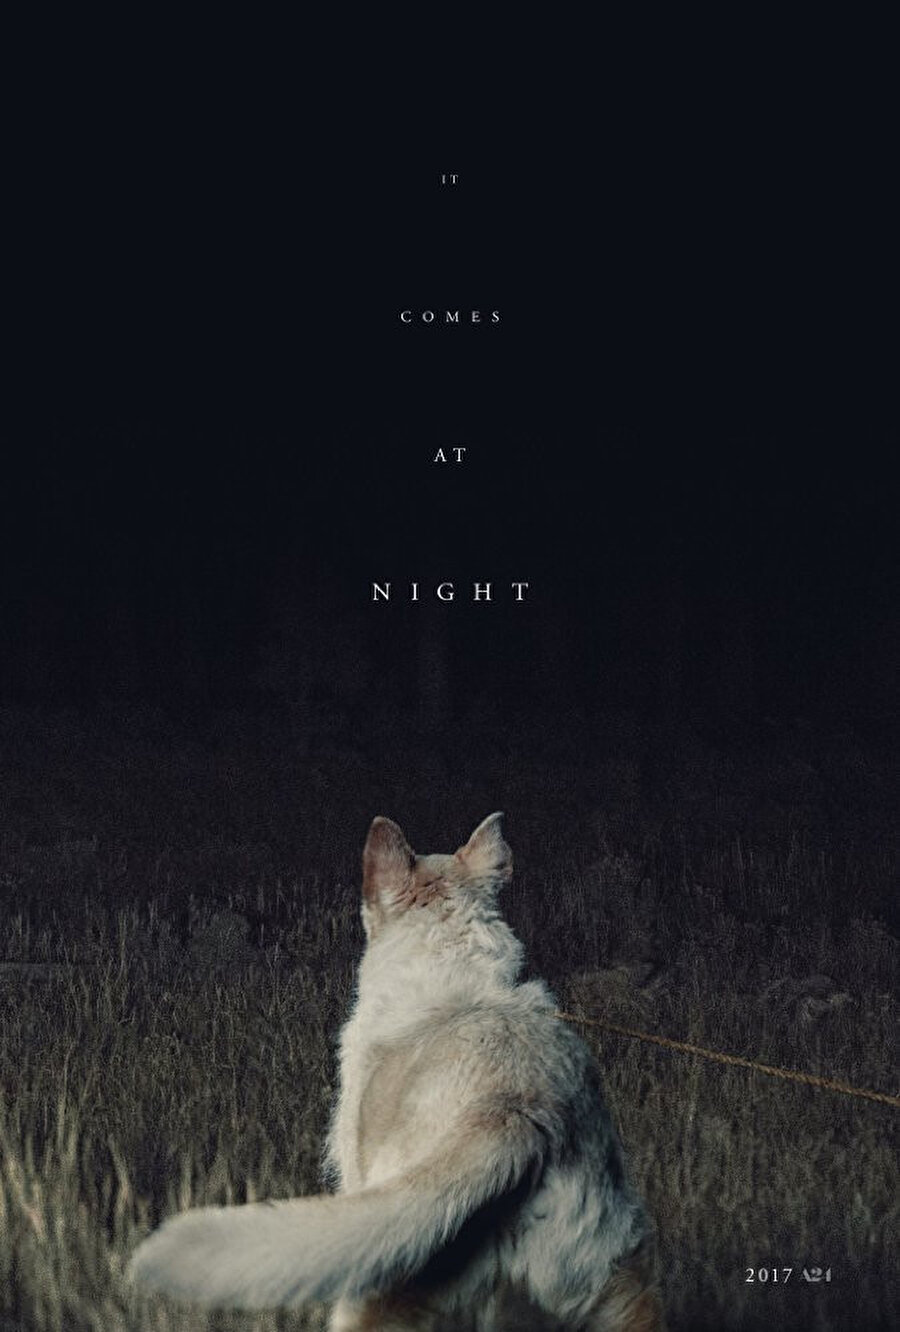 Gece Gelen (It Comes at Night, 2017), sadece türün kemik izleyici kitlesinin değil her kesimden sinemaseverin ilgisini çekebilecek bir yapım. İ